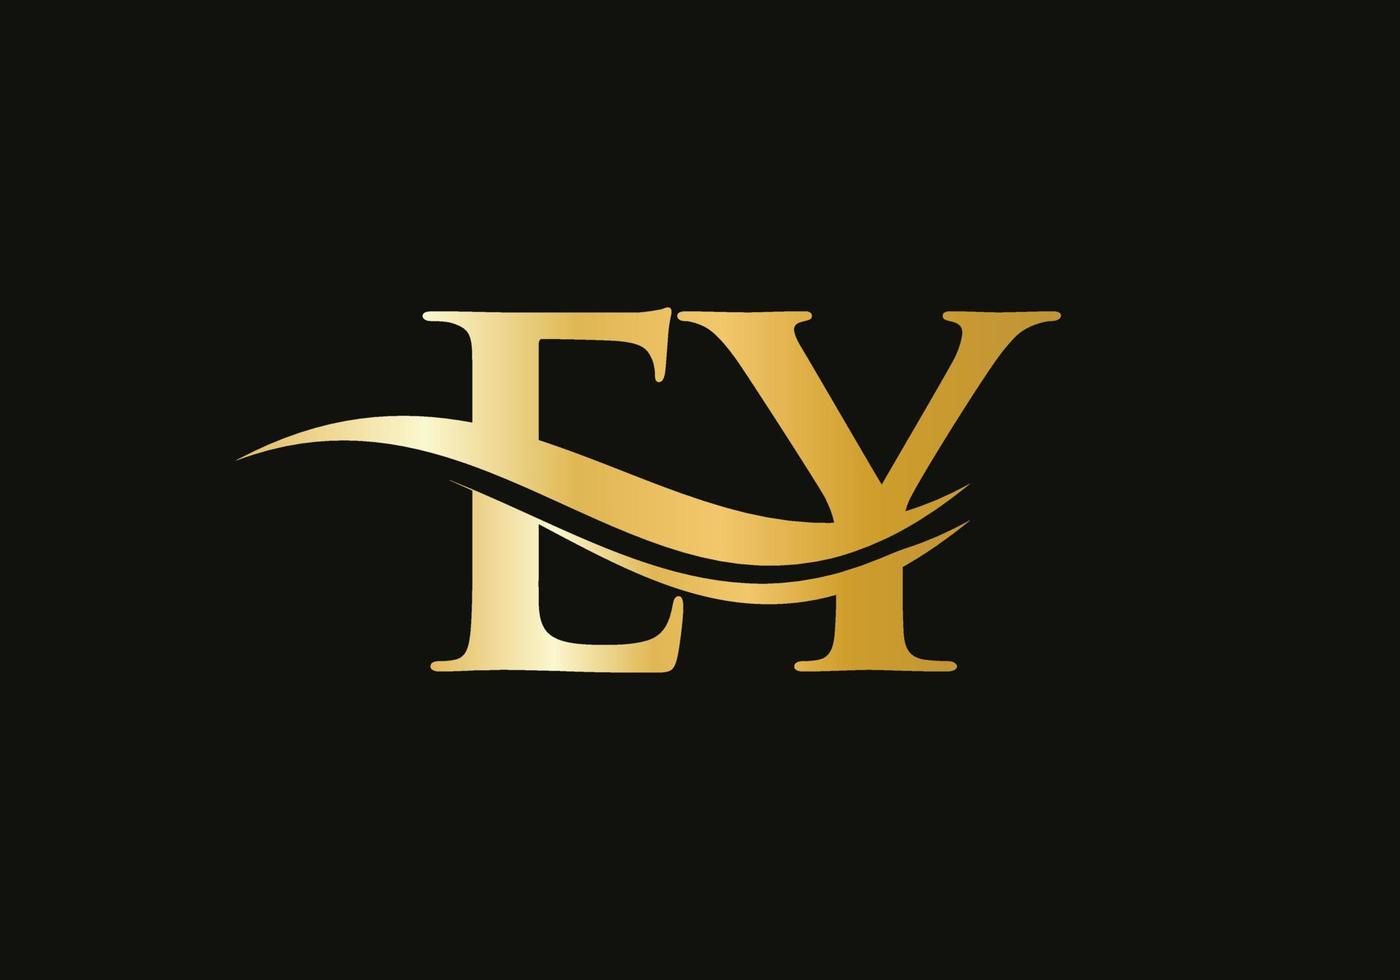 susa brev ey logotyp design för företag och företag identitet. vatten Vinka ey logotyp med modern trendig vektor